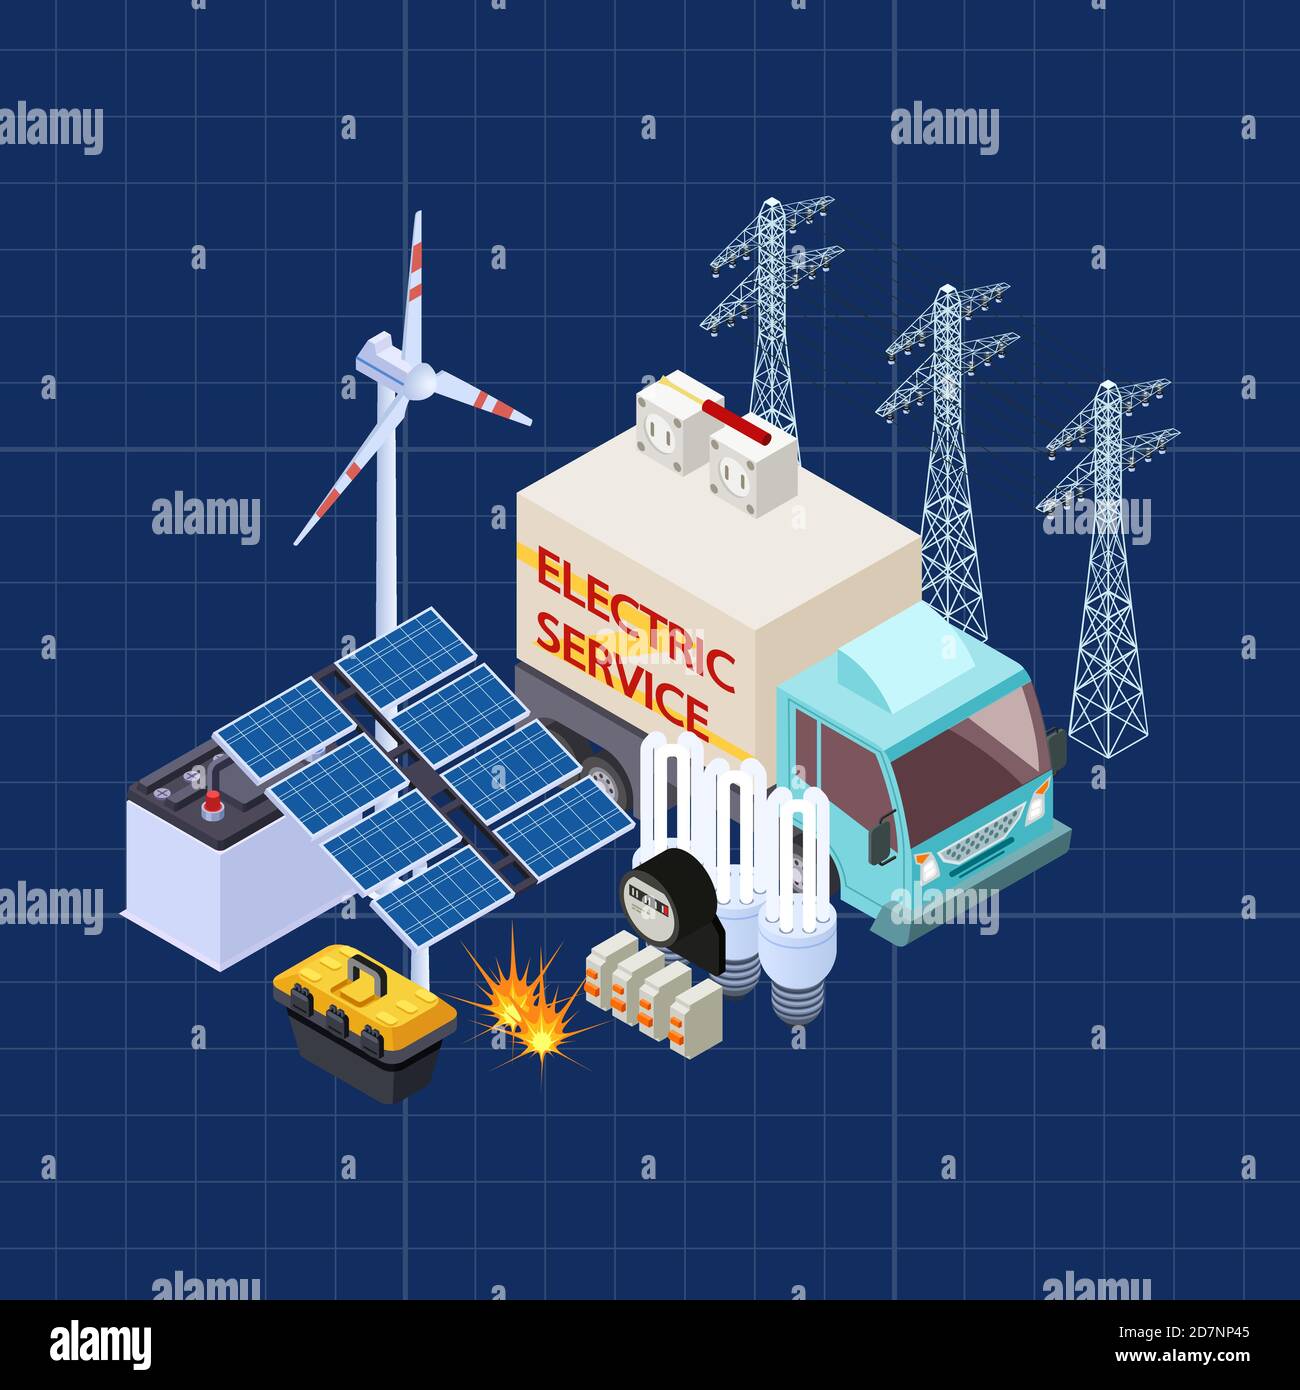 Elektrische Service-Vektor isometrische Zusammensetzung mit Energie-Sicherheits-Elemente. Illustration von Energie, elektrische Dienstleistung 3d Stock Vektor